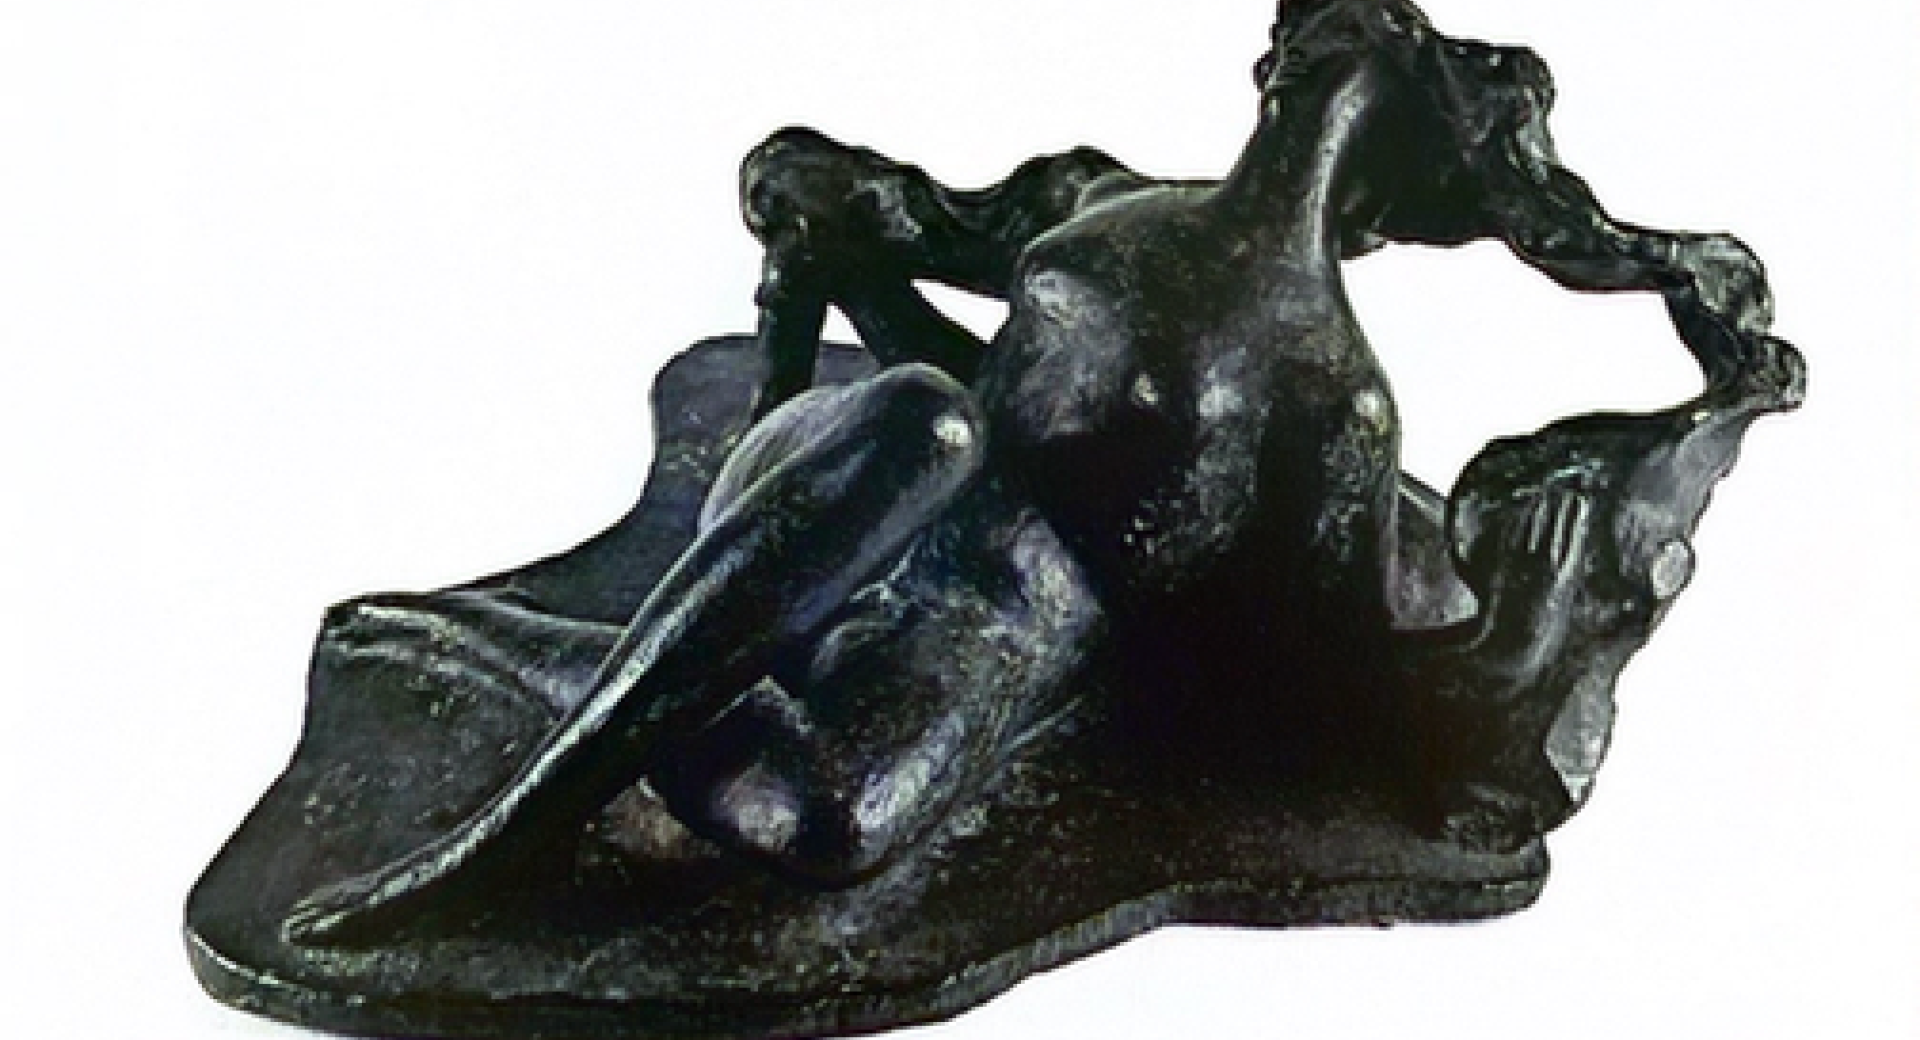 crna skulptura na belem ozadju